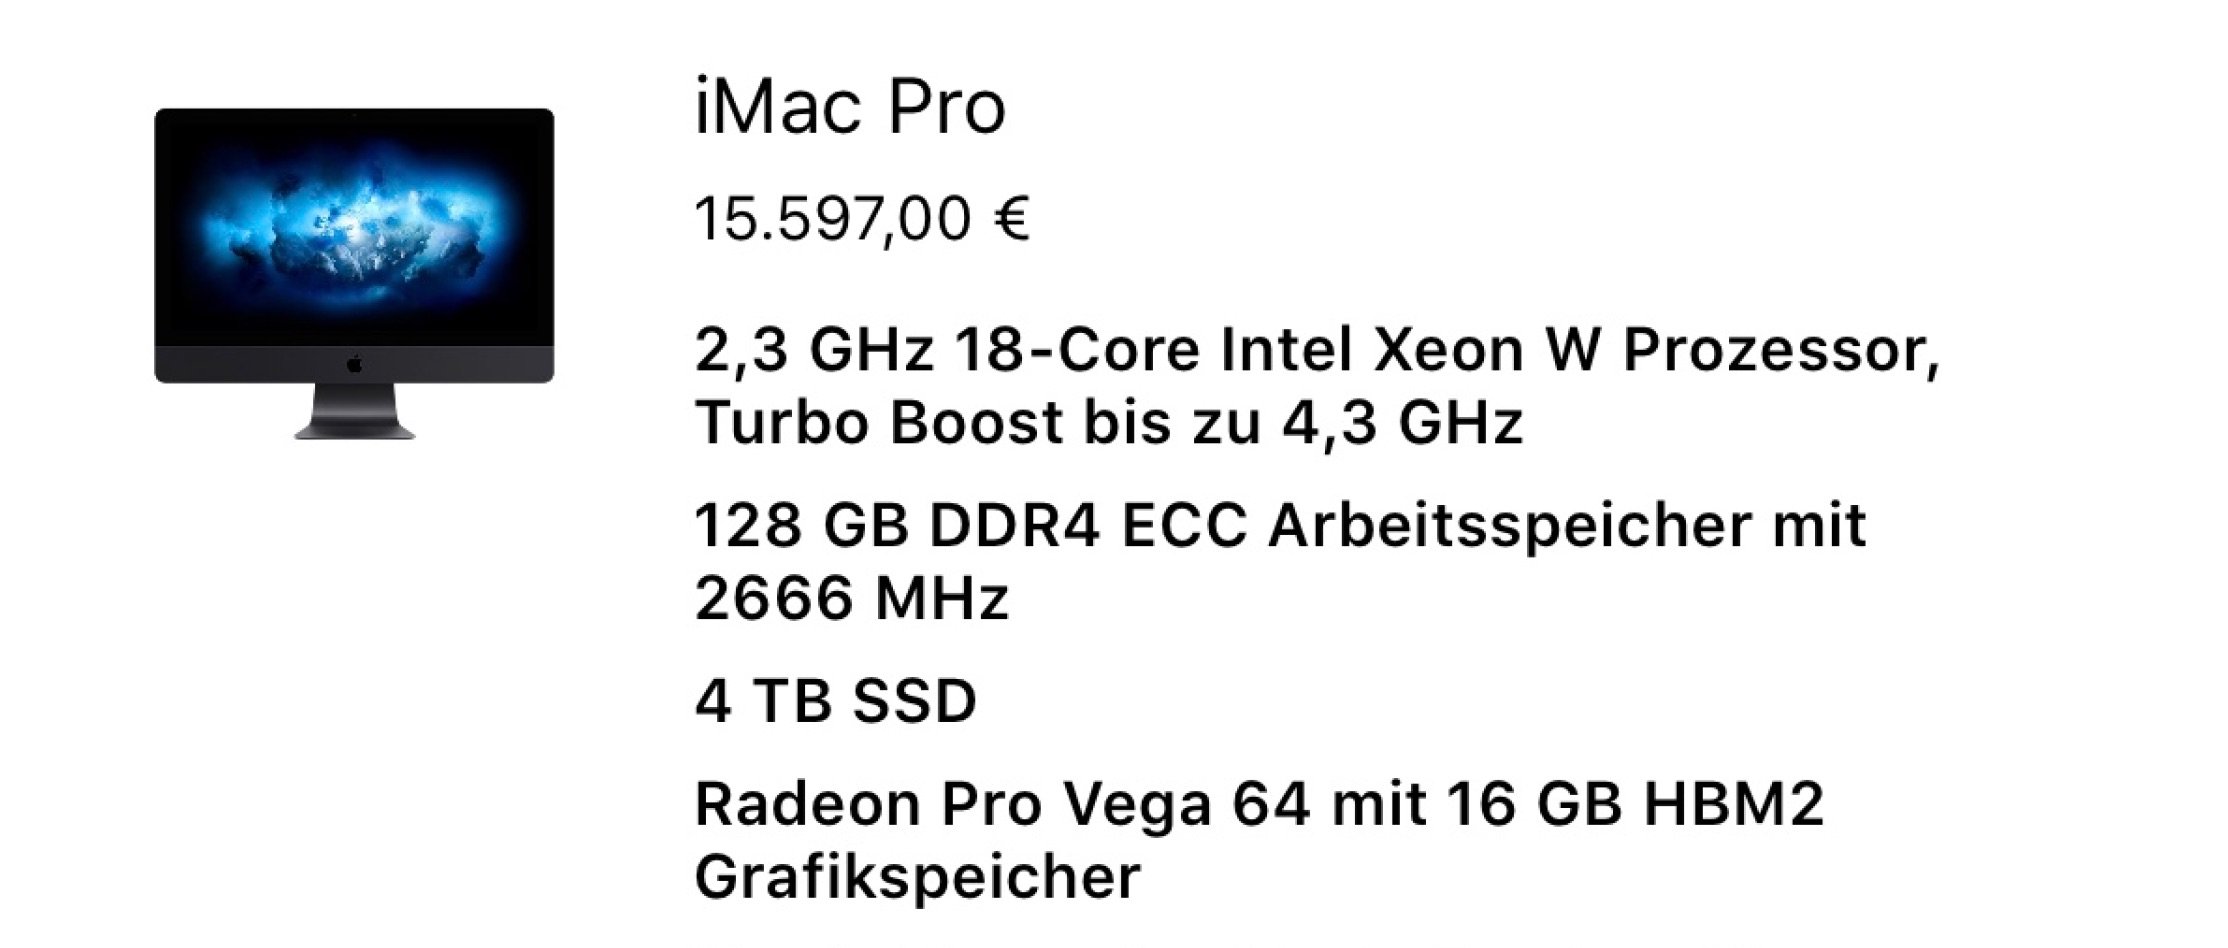 Schnäppchen: iMac Pro Preise von 5499 bis 16000 Euro! 10